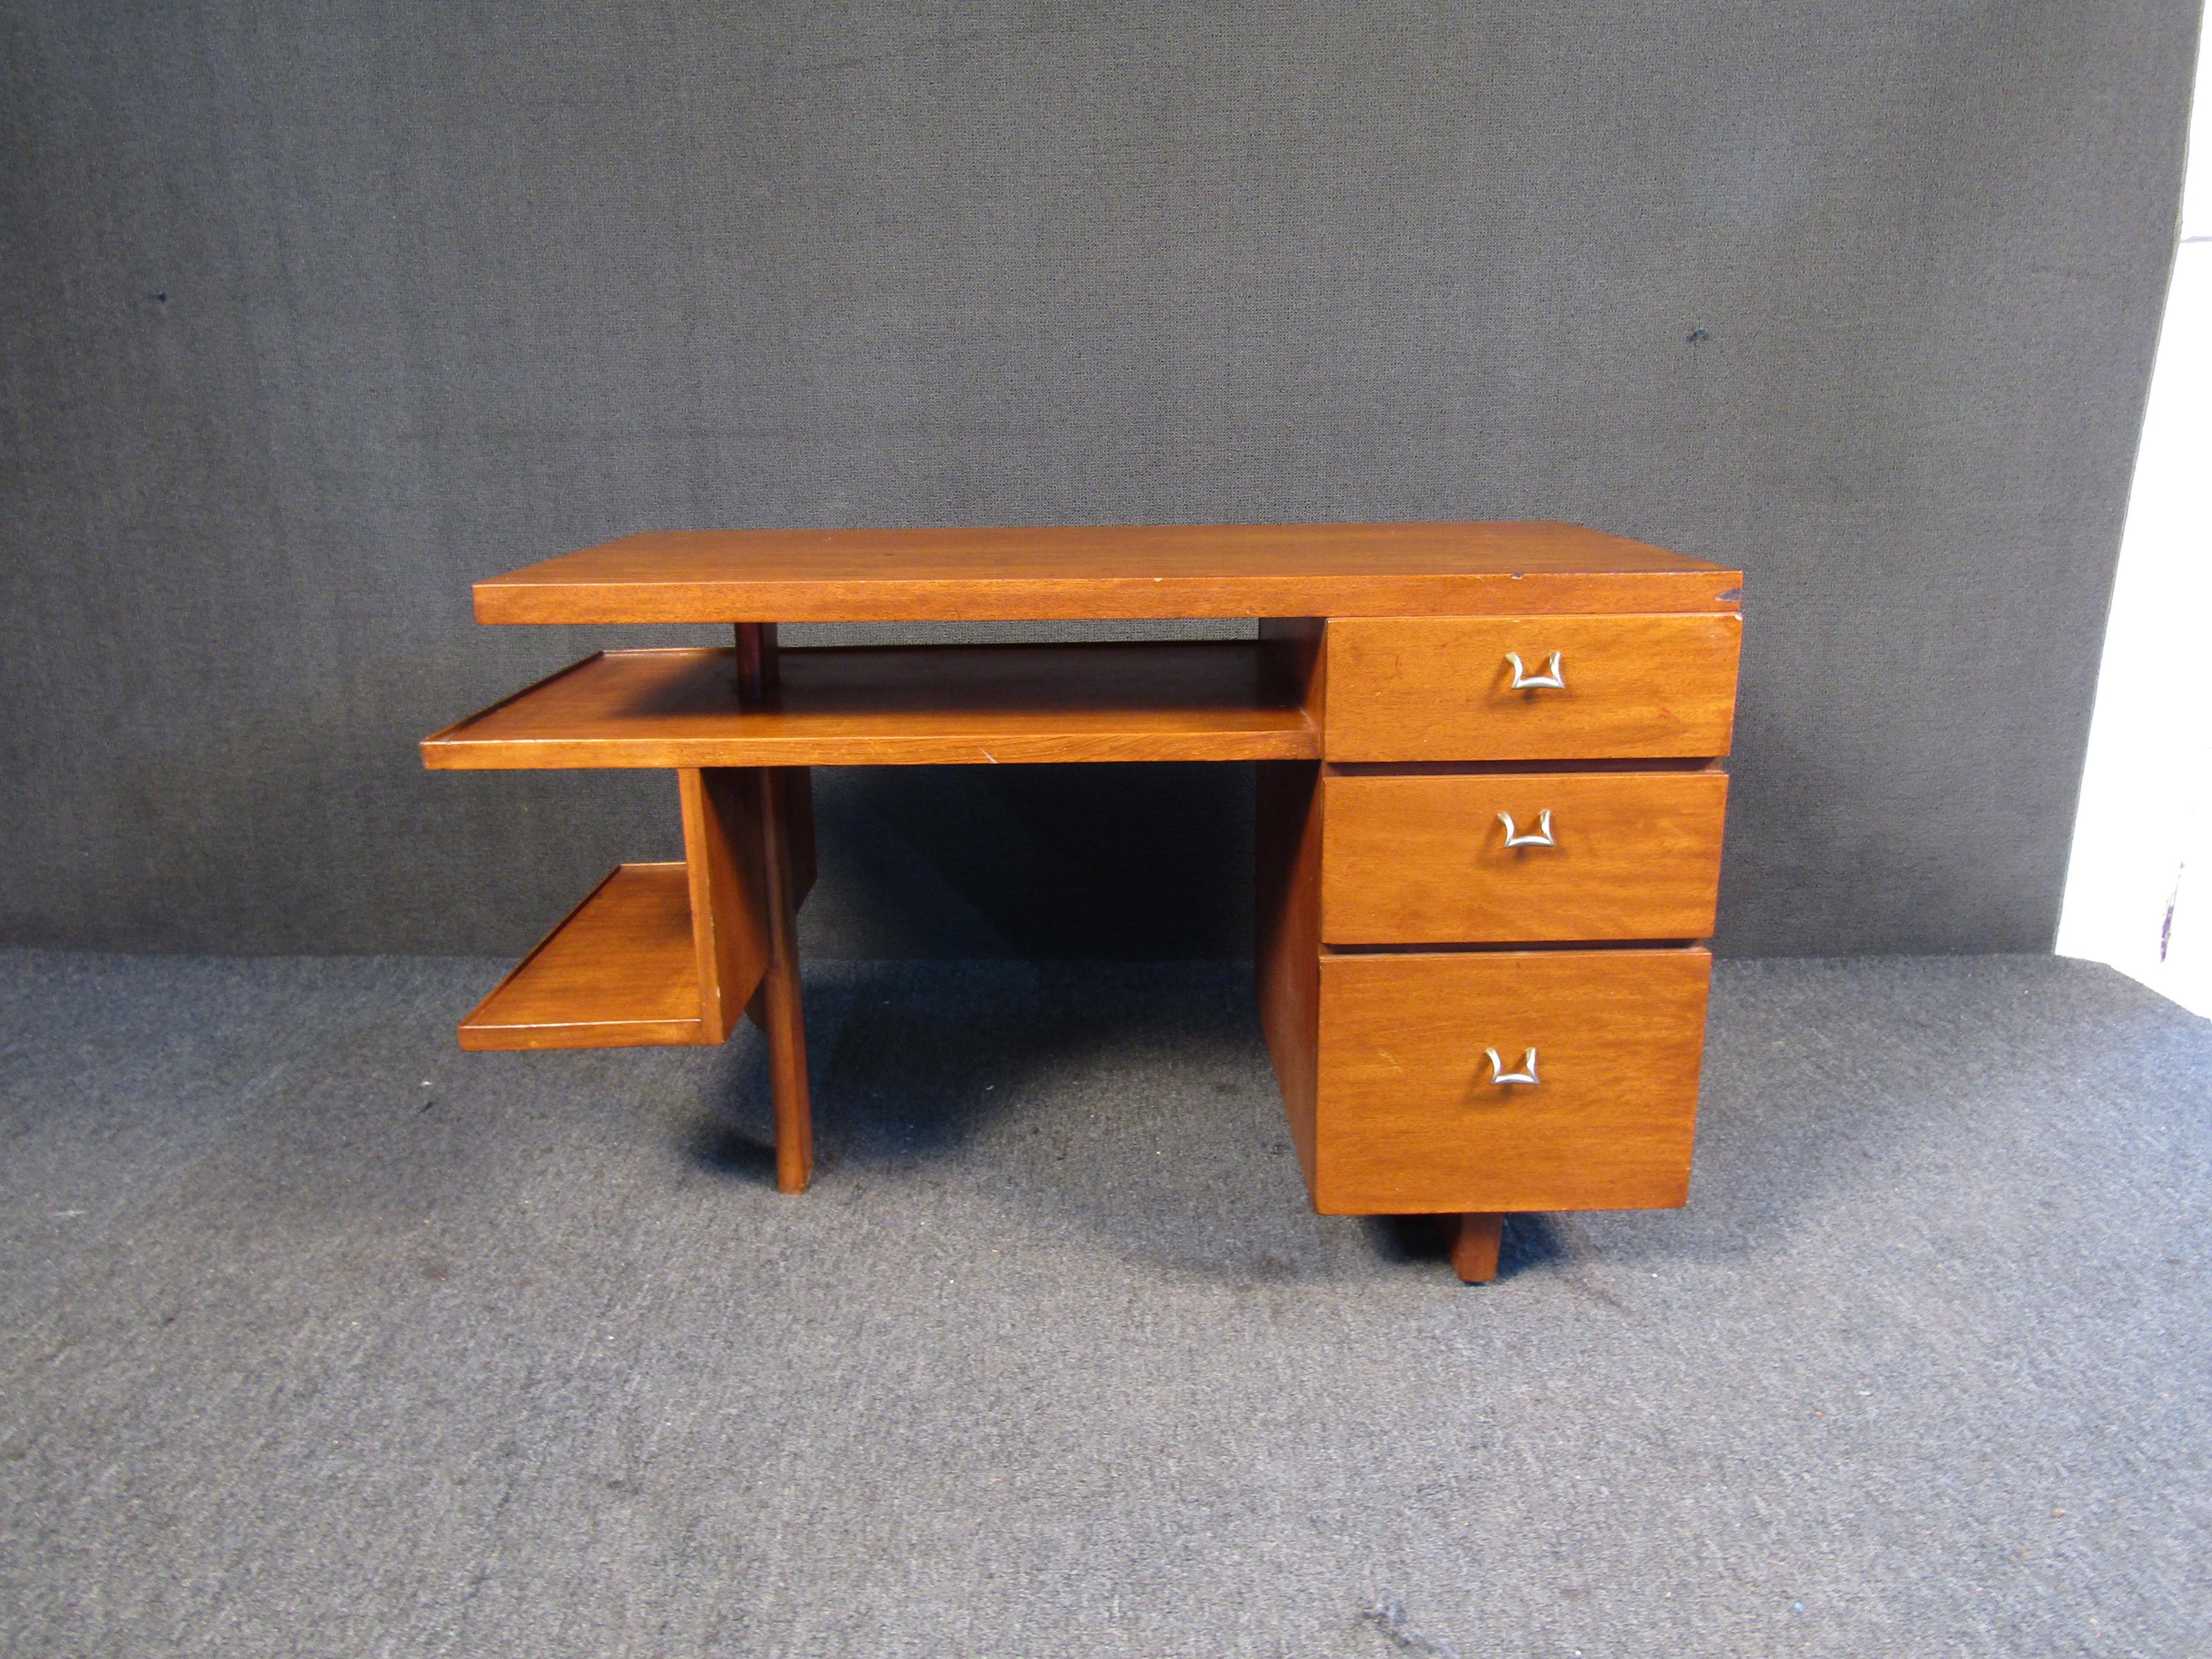 Moderner Schreibtisch im Vintage-Stil mit reicher Walnussmaserung. Dieser Schreibtisch steht auf schlanken, spitz zulaufenden Beinen und hat drei geräumige Schubladen. Dies wäre eine perfekte Ergänzung für jeden kreativen Raum.

Bitte bestätigen